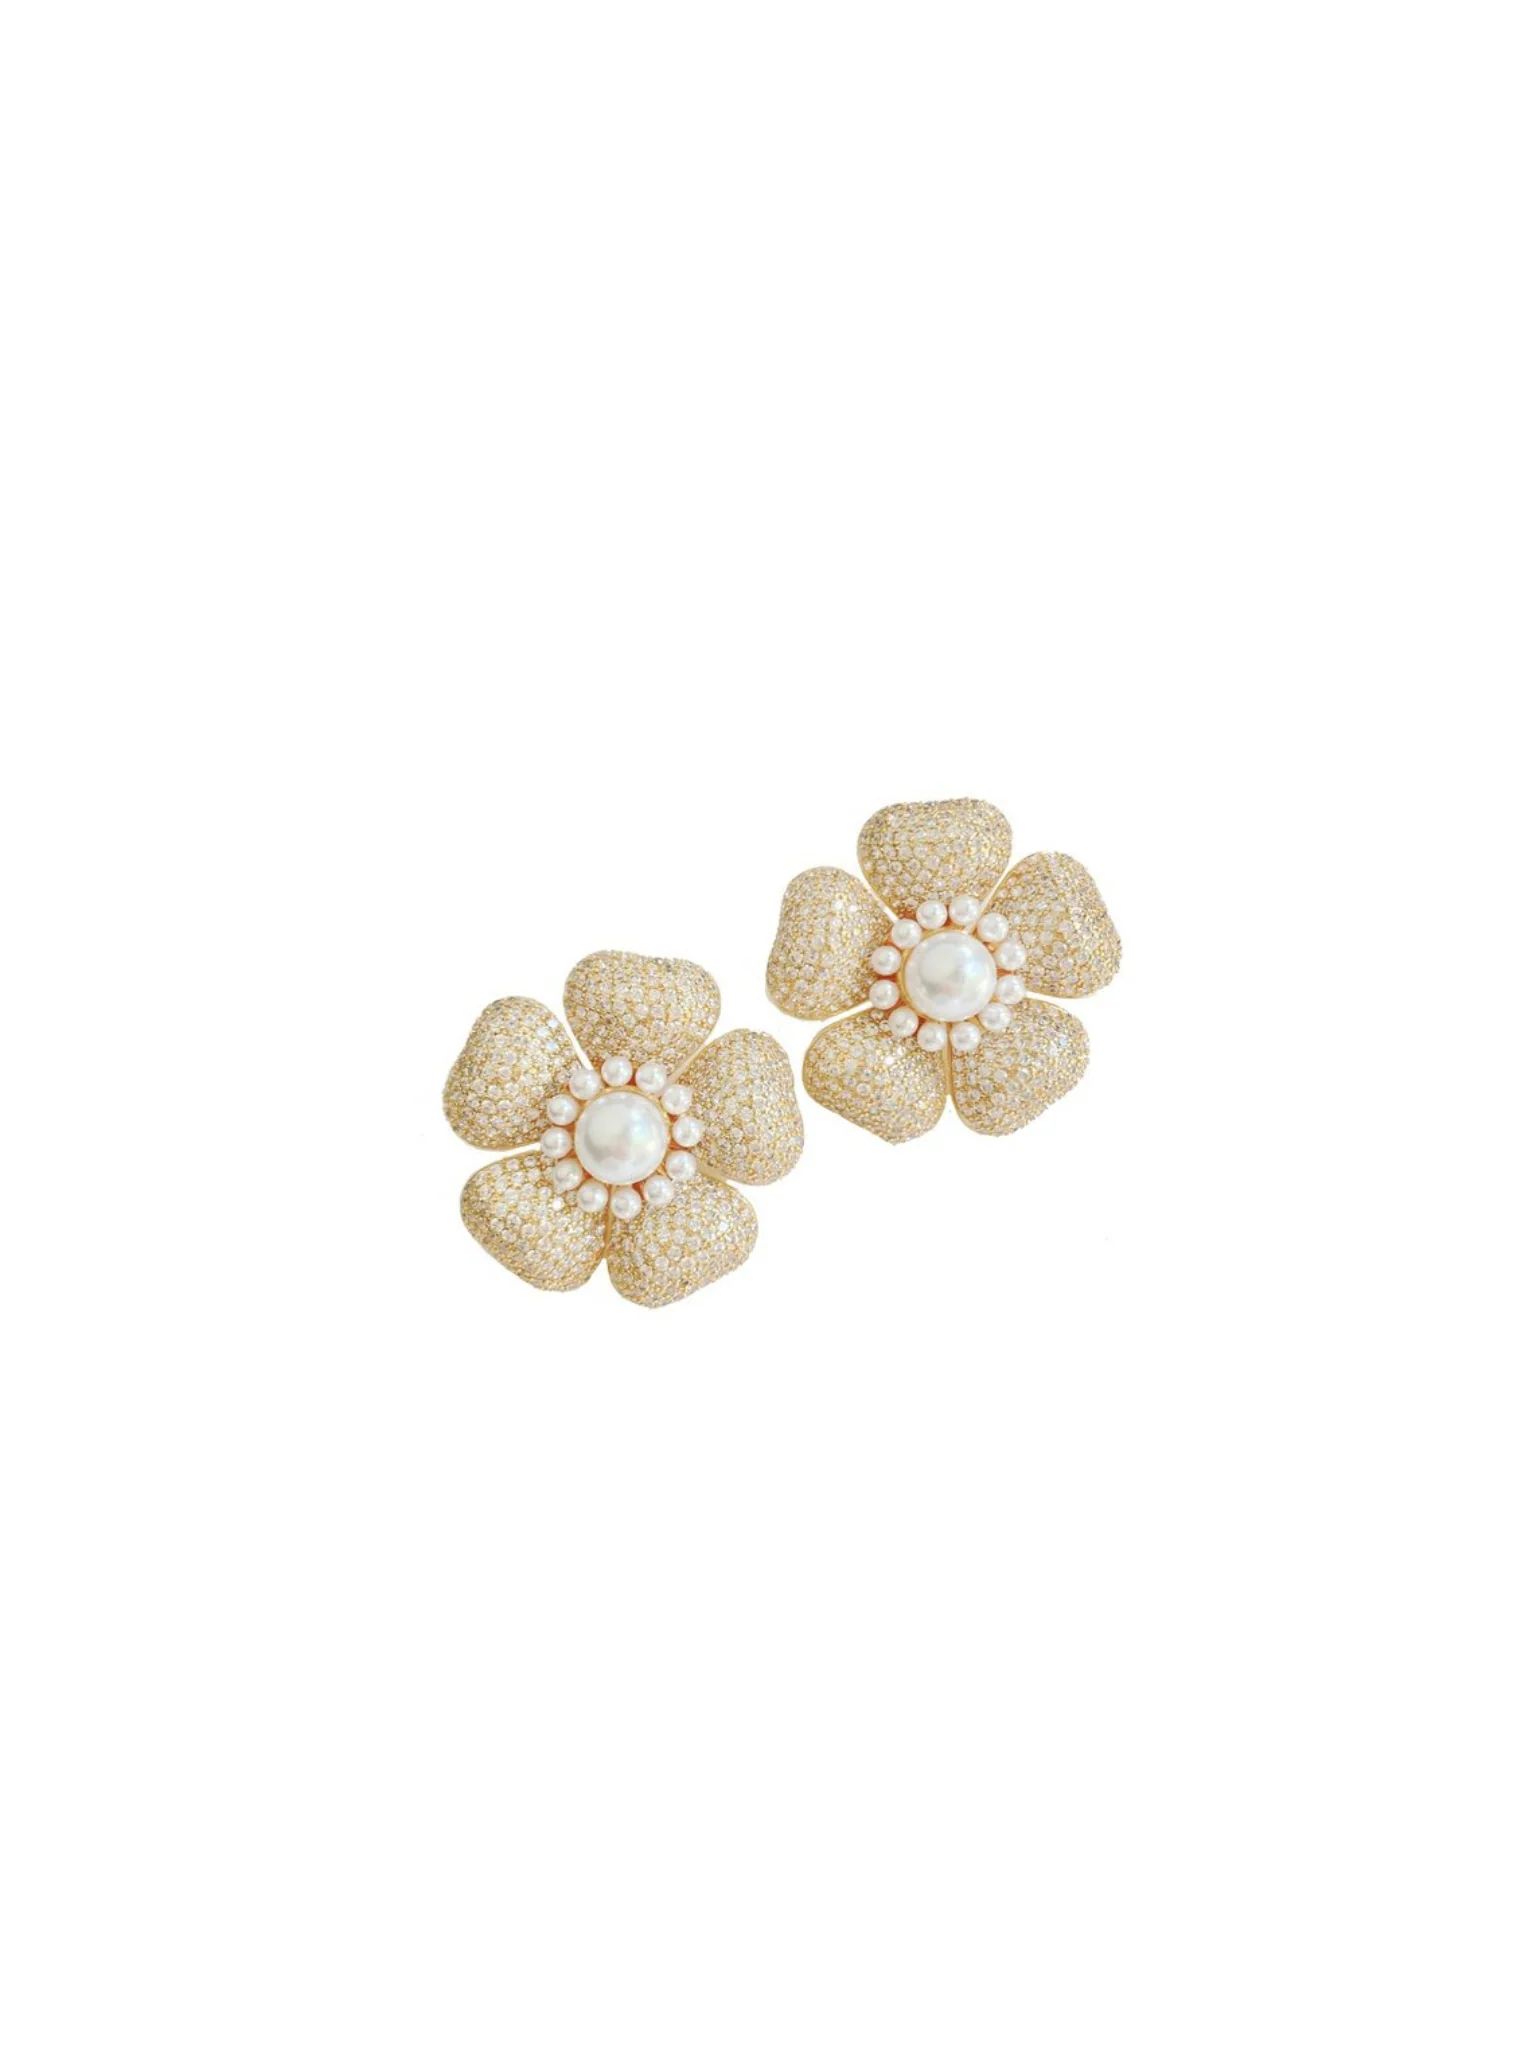 embellished anemone | Nicola Bathie Jewelry